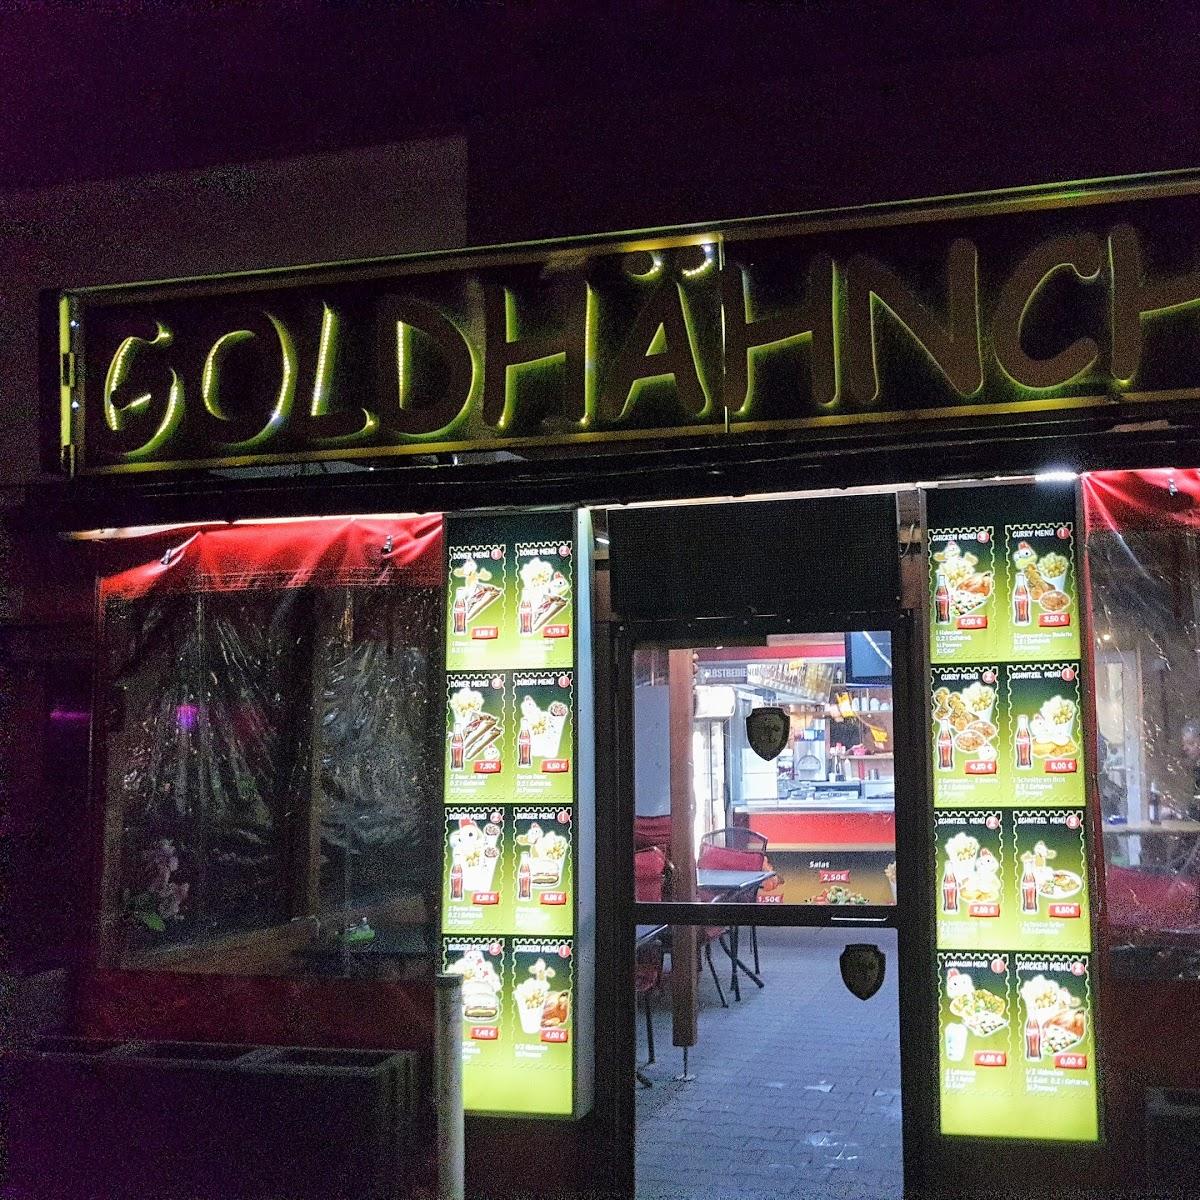 Restaurant "Goldhähnchen Imbiss" in Berlin